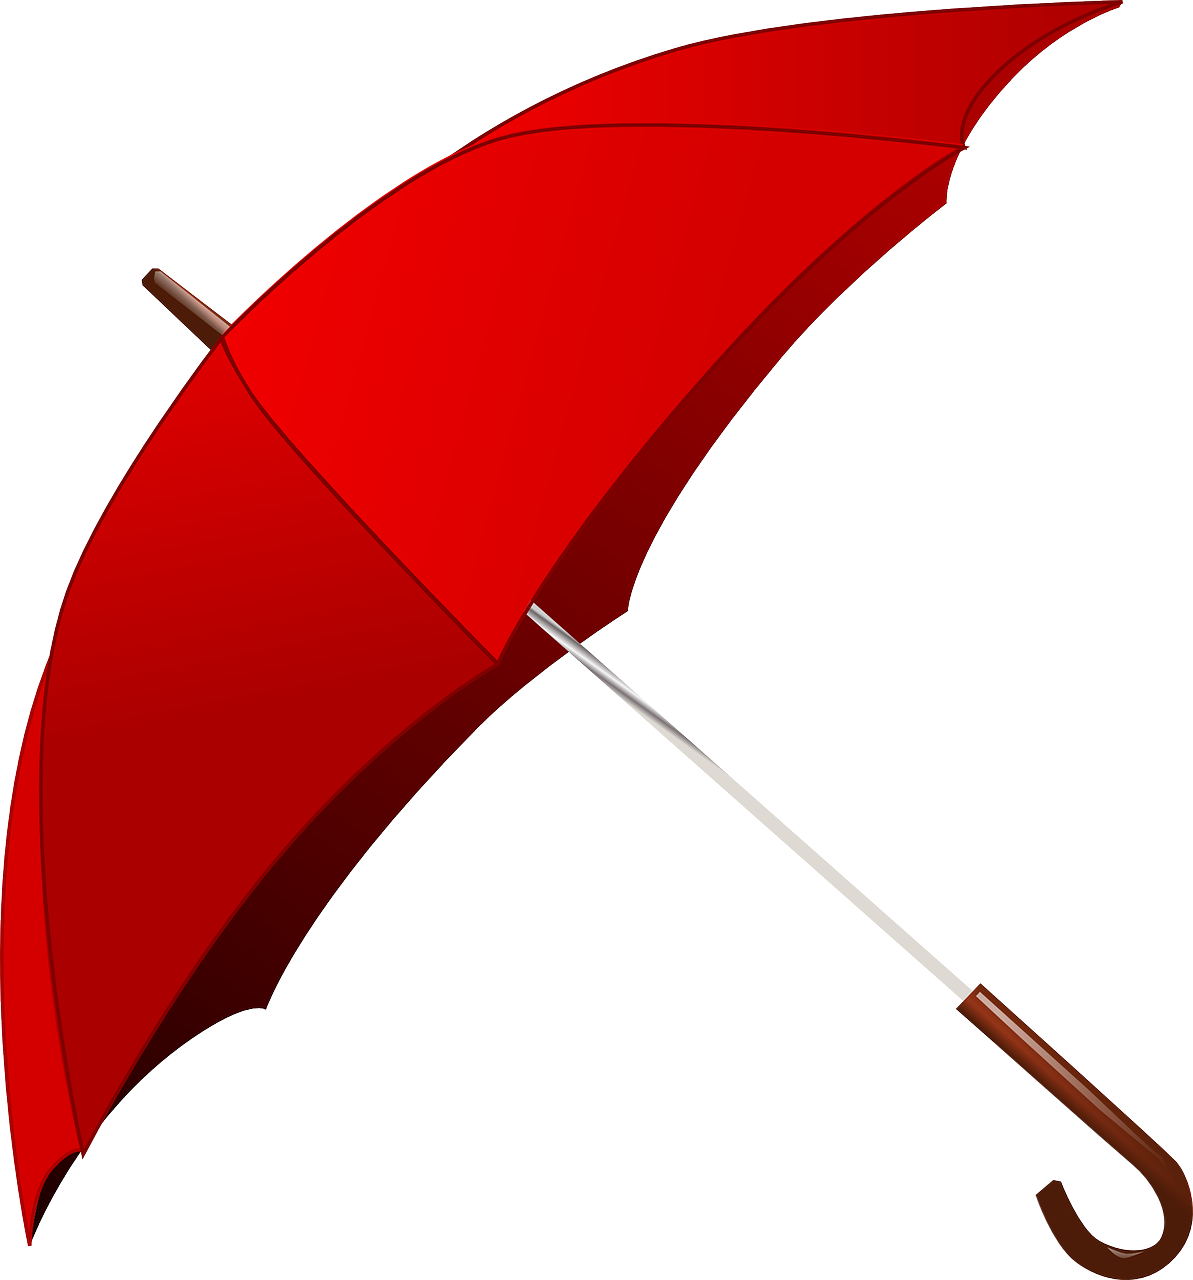 Rzeczy - Things - Angielski od podstaw - Angielski słówka - an umbrella